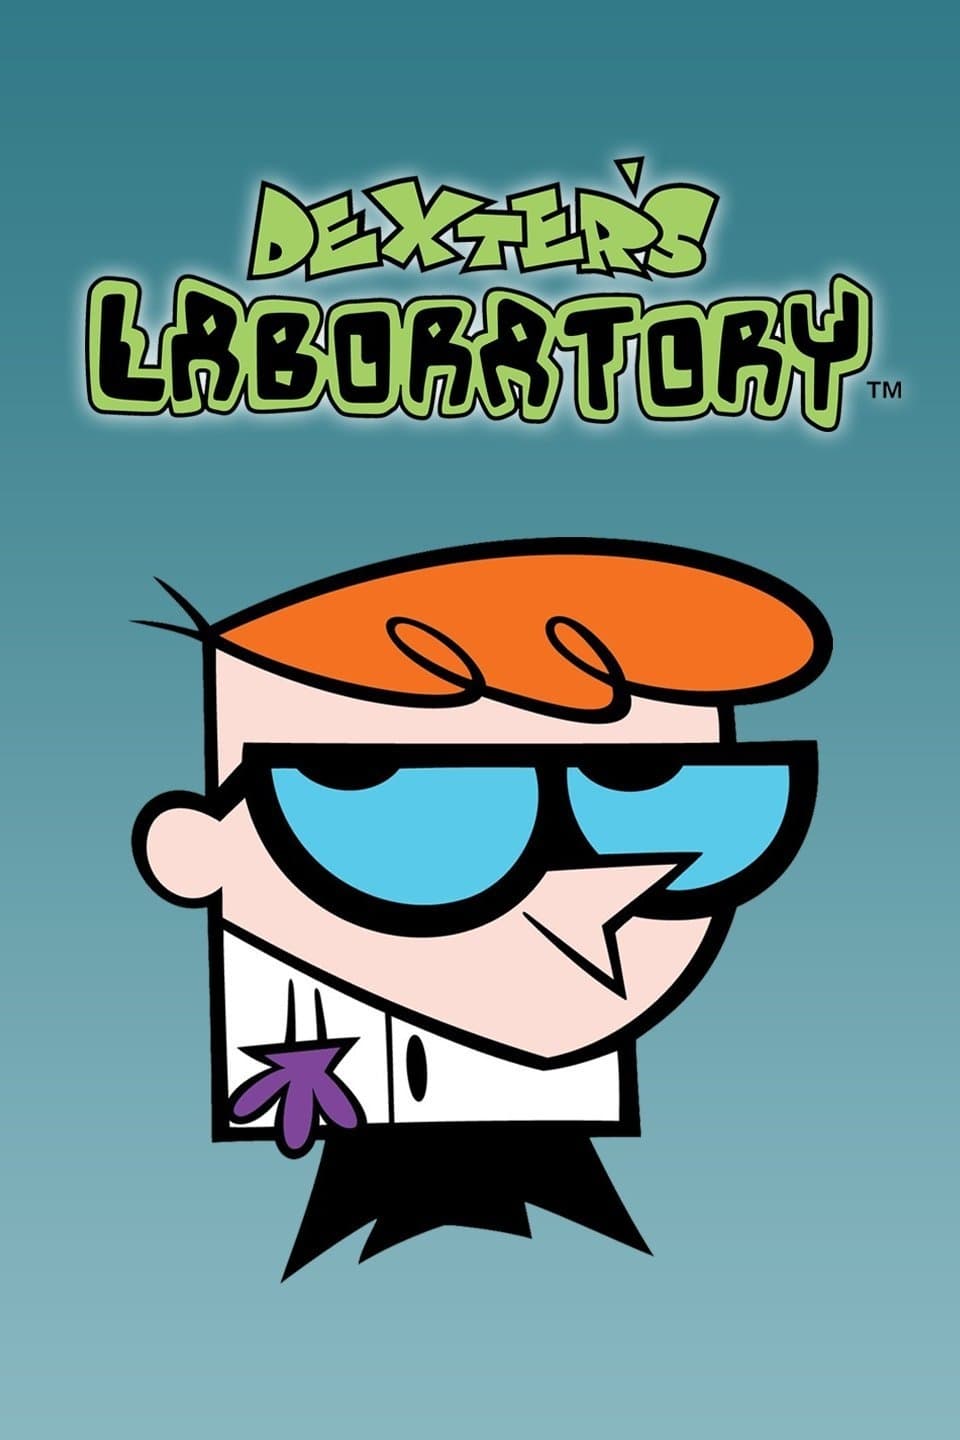 Dexter's Laboratory TV Shows About Boy Genius